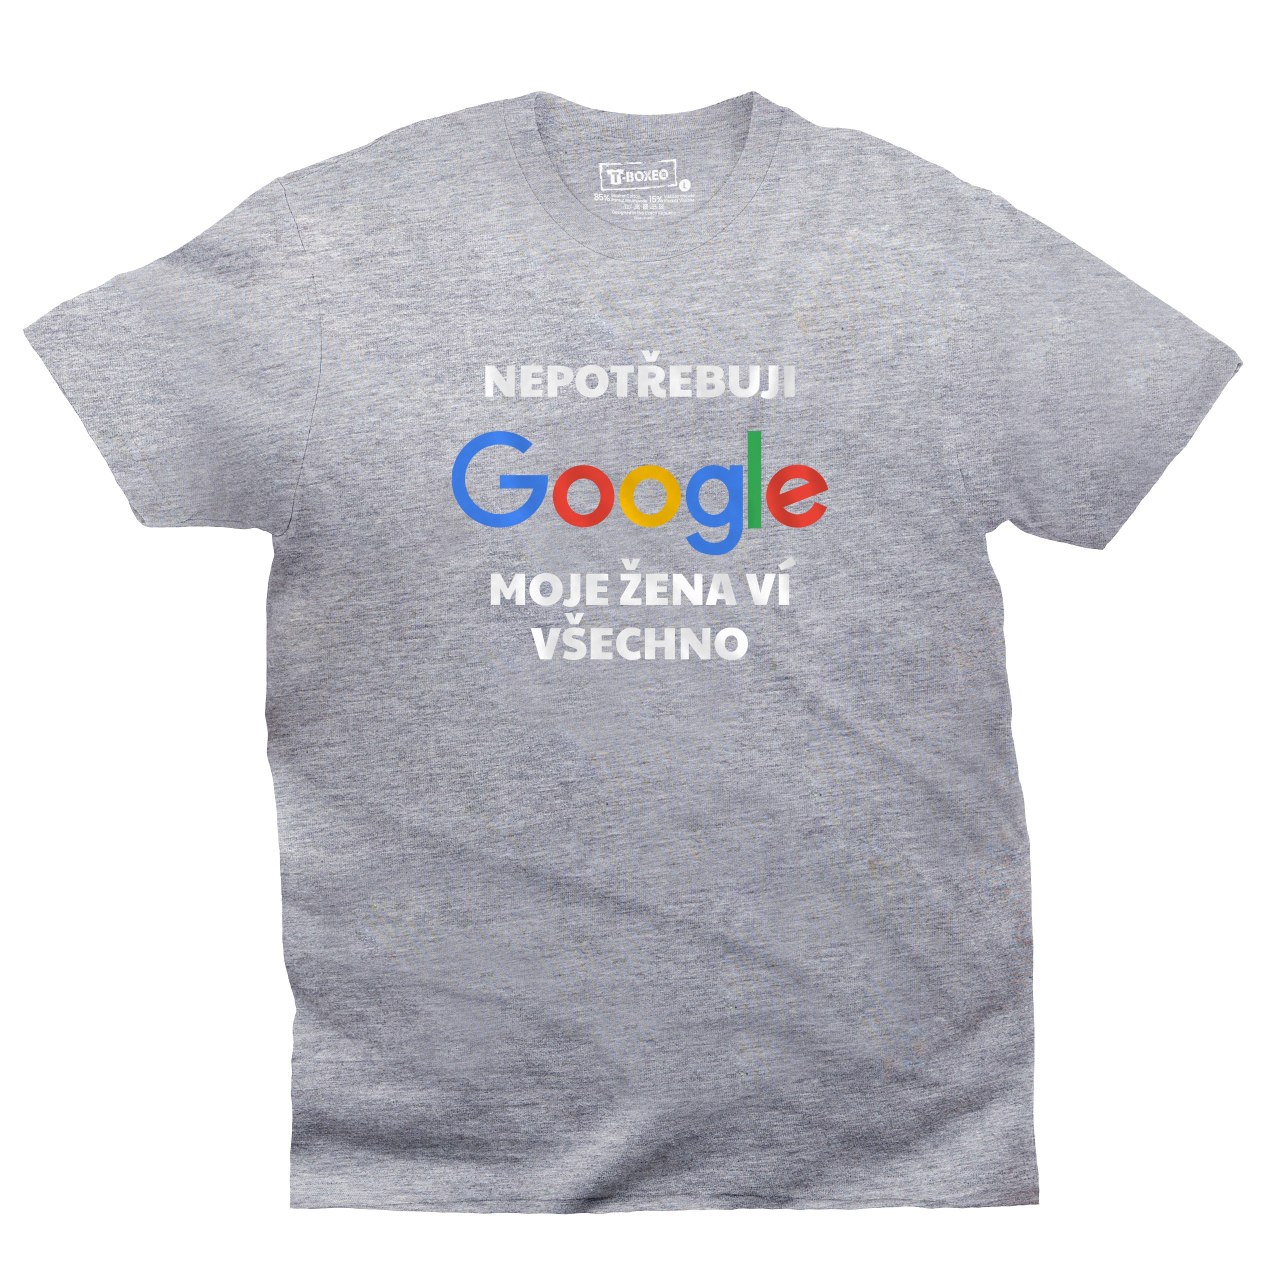 Pánské tričko s potiskem “Nepotřebuji Google, moje žena ví všechno”